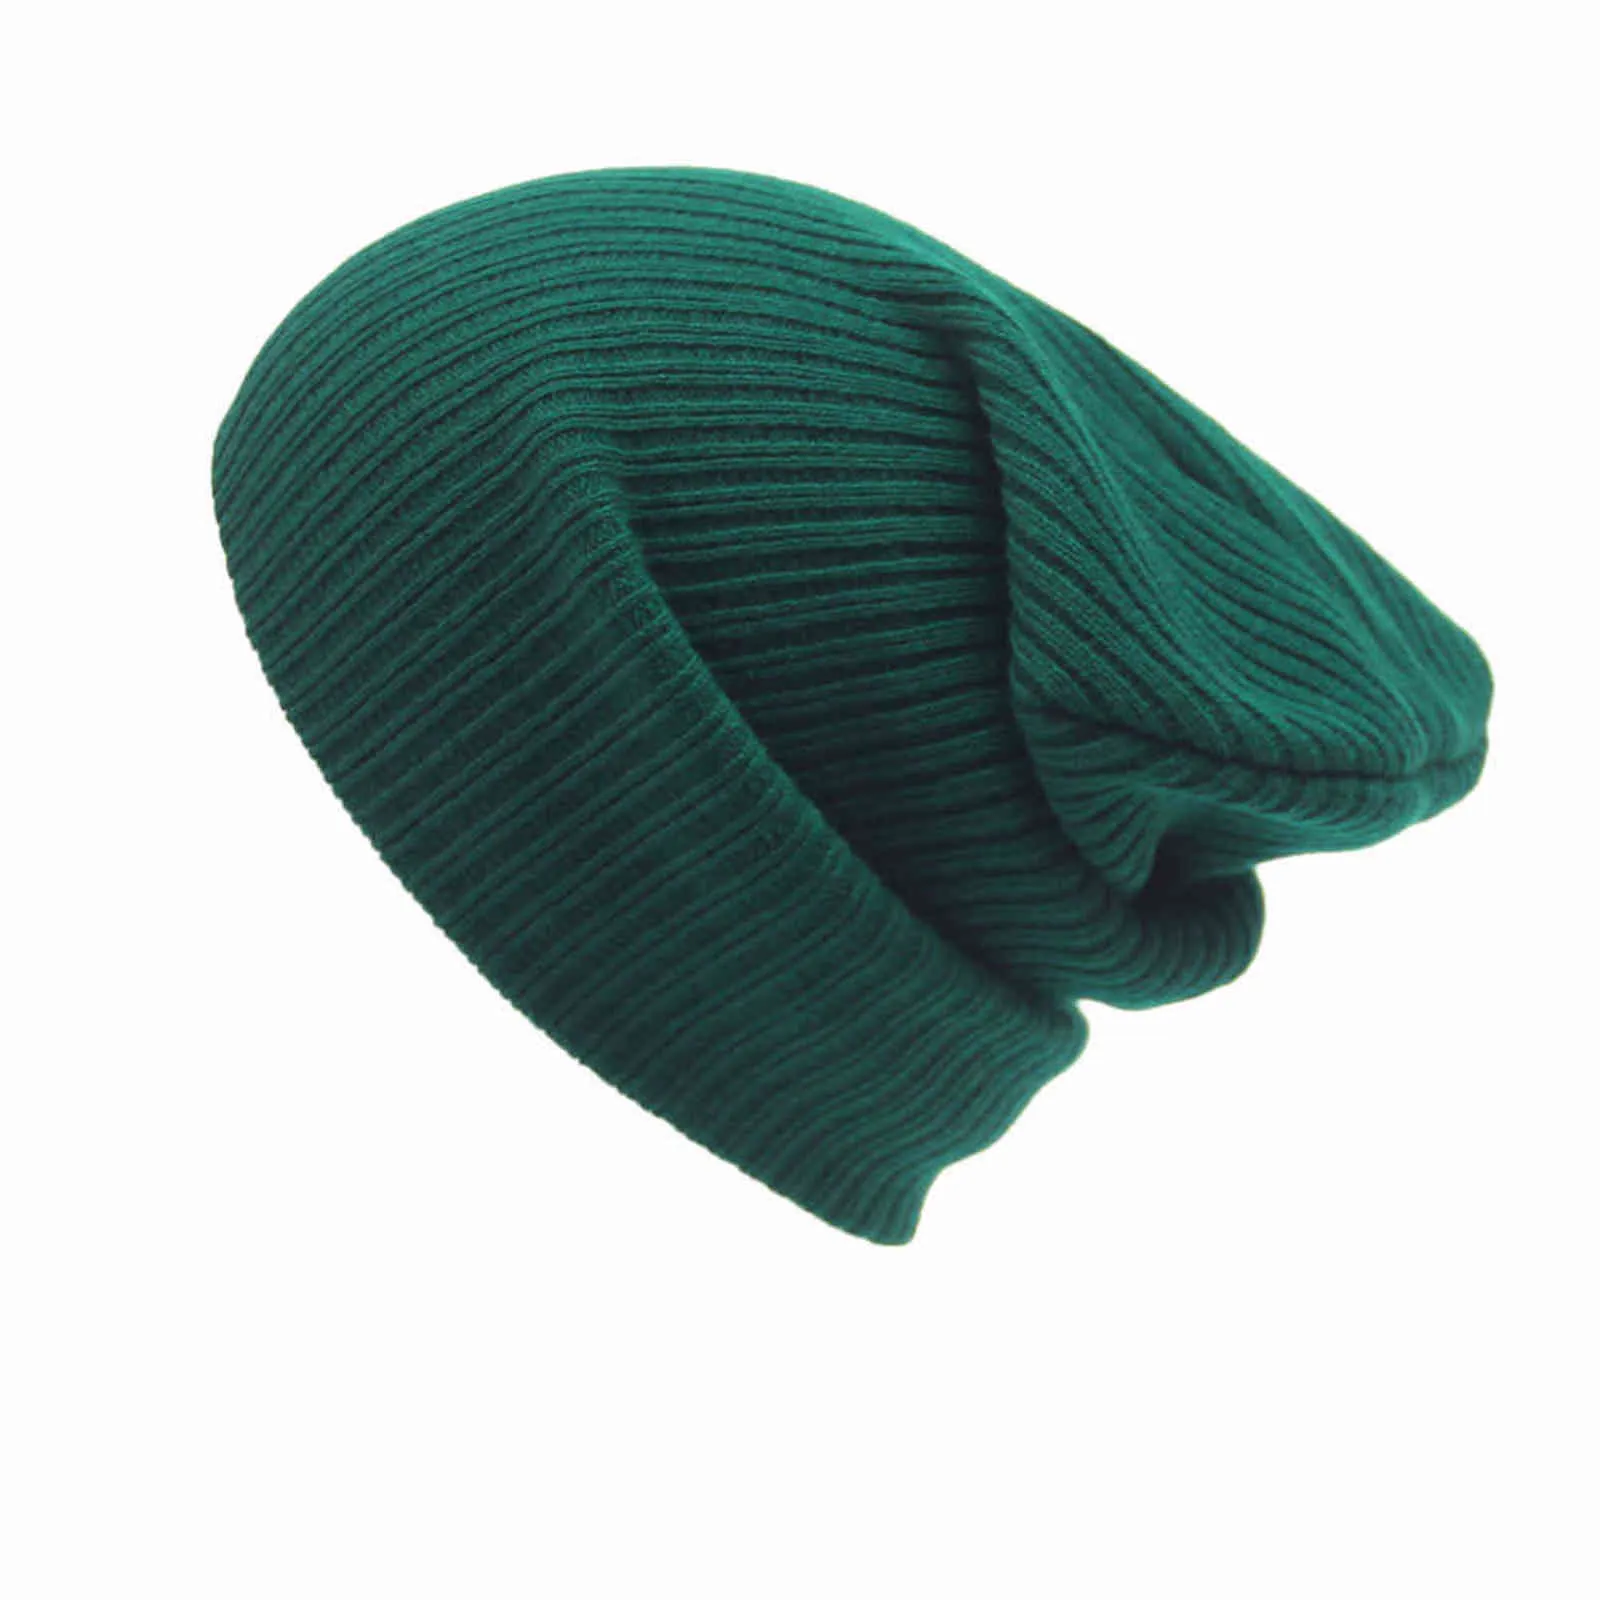 Ny vinter varm stickad beanie cap män kvinnors solida ull stickad hatt kpop stil ull beanie elegant all-match hatt 2020 y21111